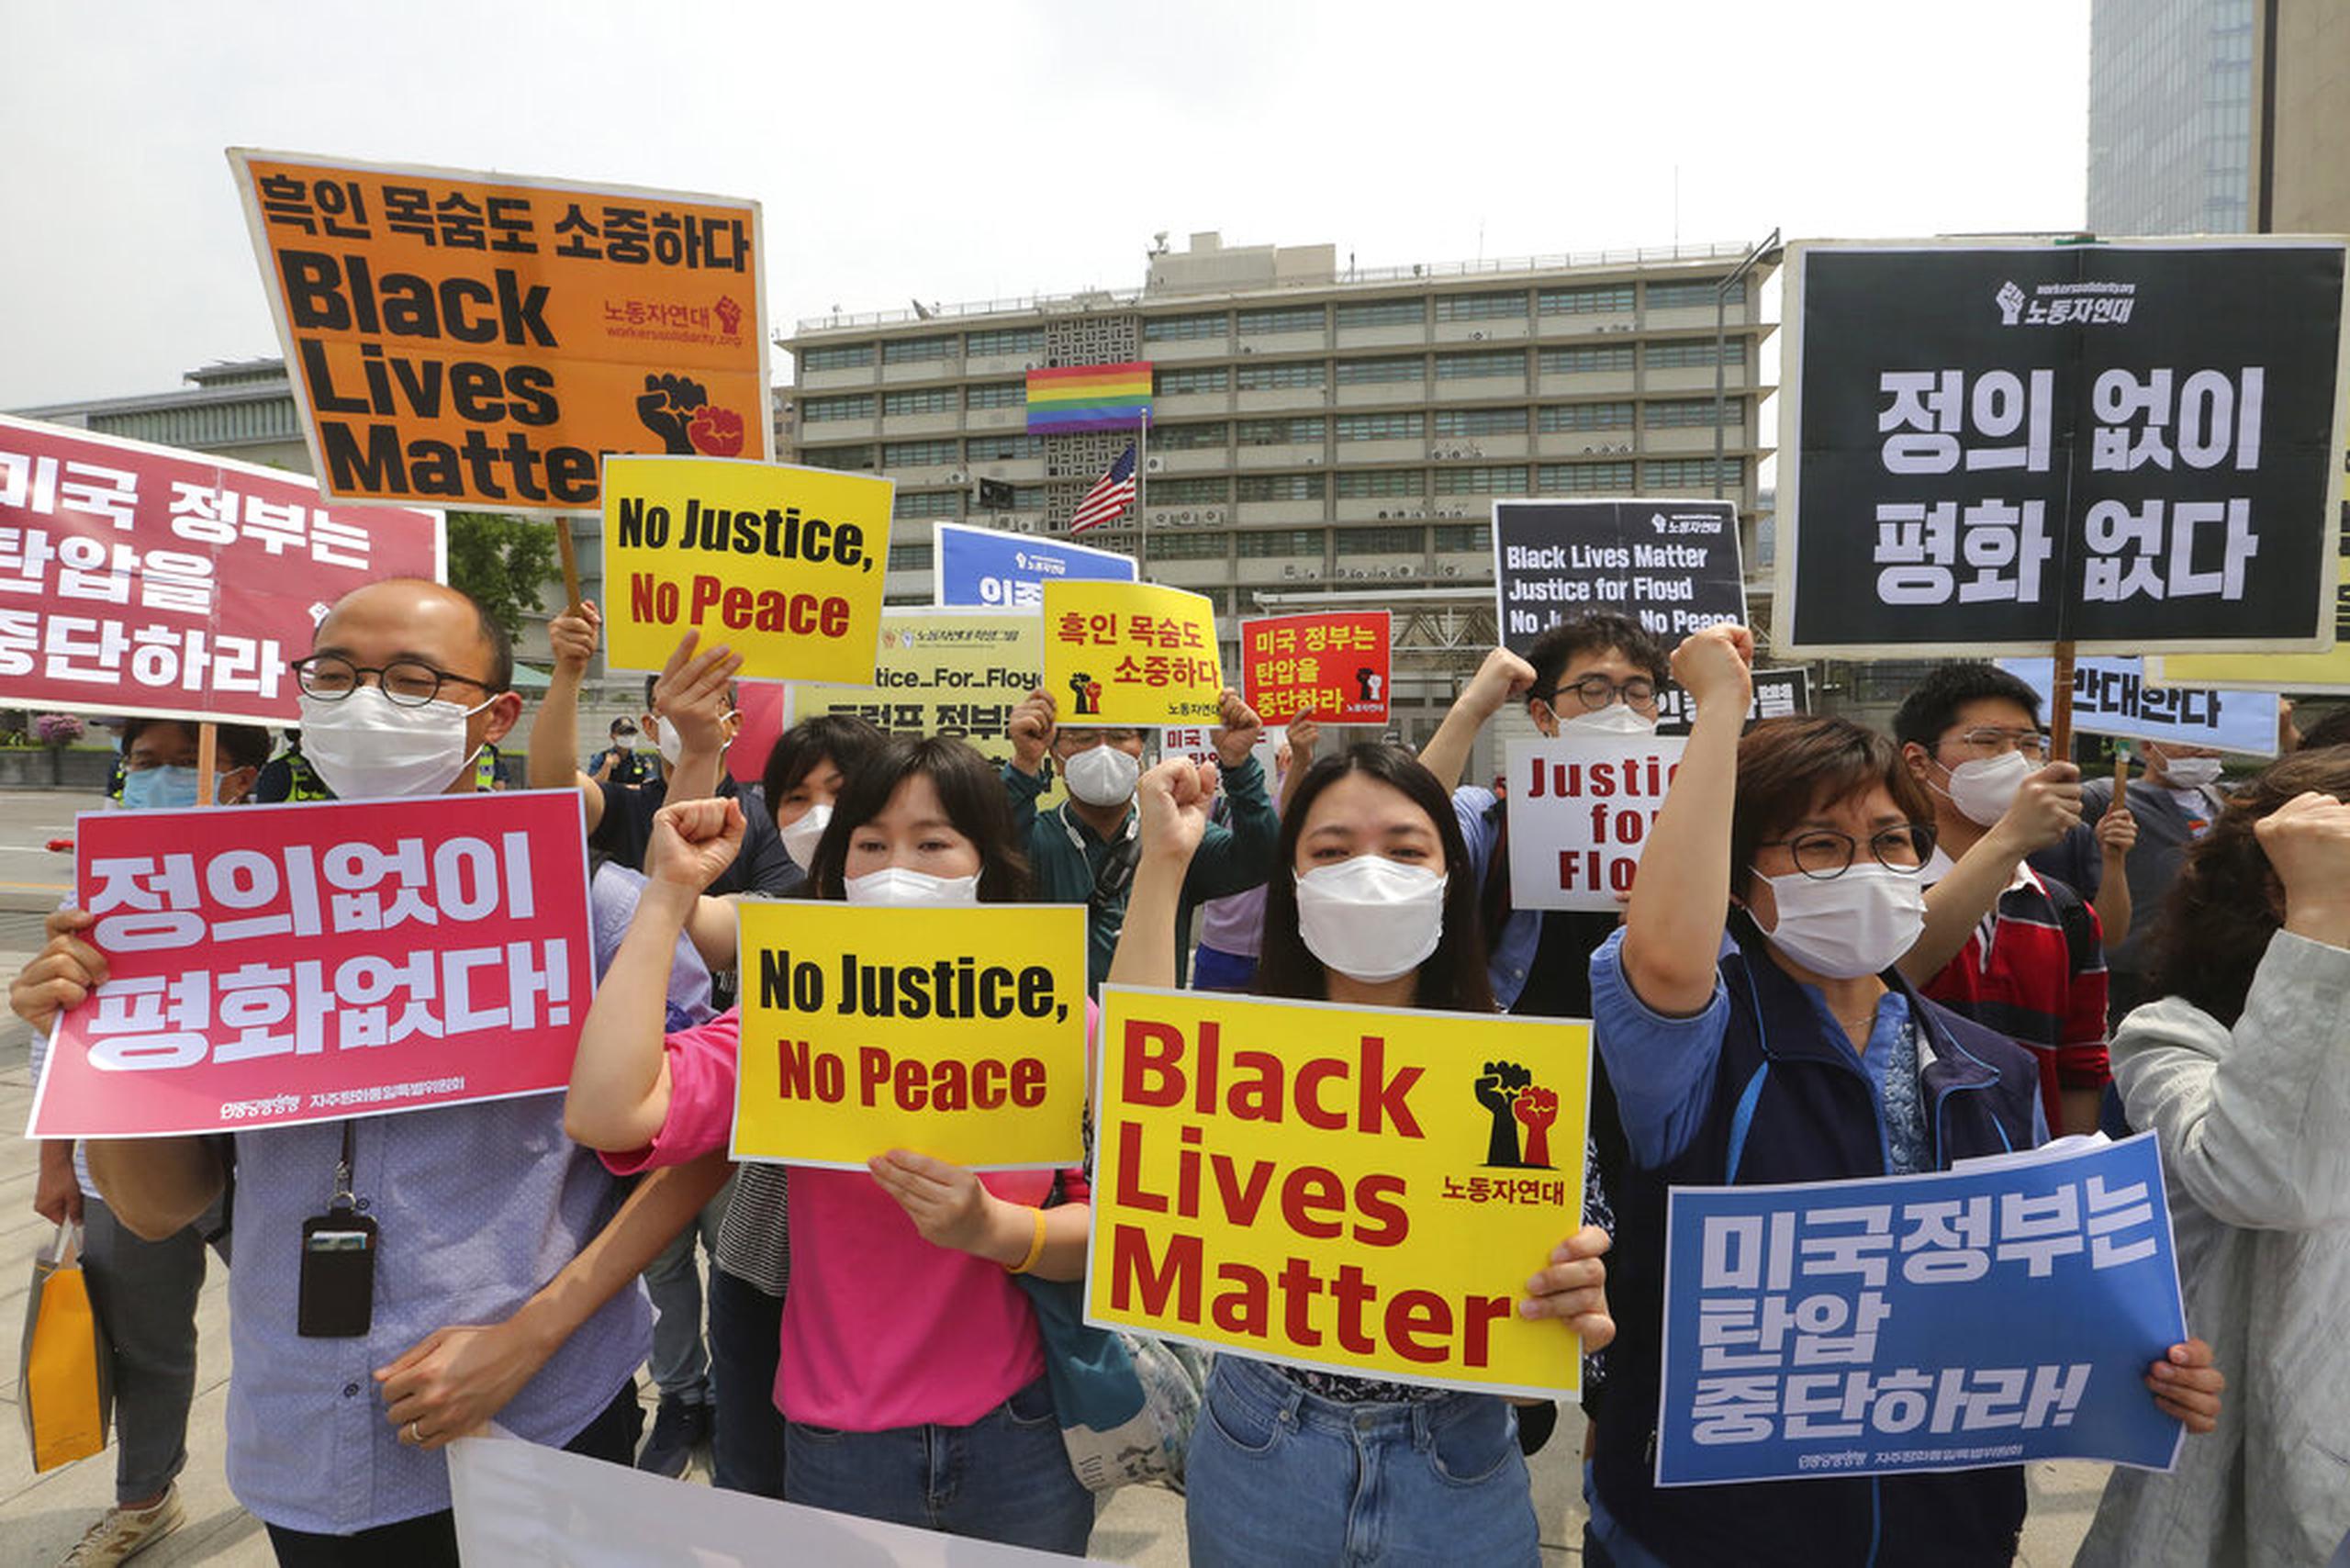 Manifestantes de Corea del Sur gritan consignas durante una protesta por el asesinato de George Floyd, un afroestadounidense que murió a finales de mayo mientras era detenido por la policía en Minneapolis, cerca de la embajada de Estados Unidos en Seúl, Corea del Sur, el 5 de junio de 2020. (AP Foto/Ahn Young-joon)